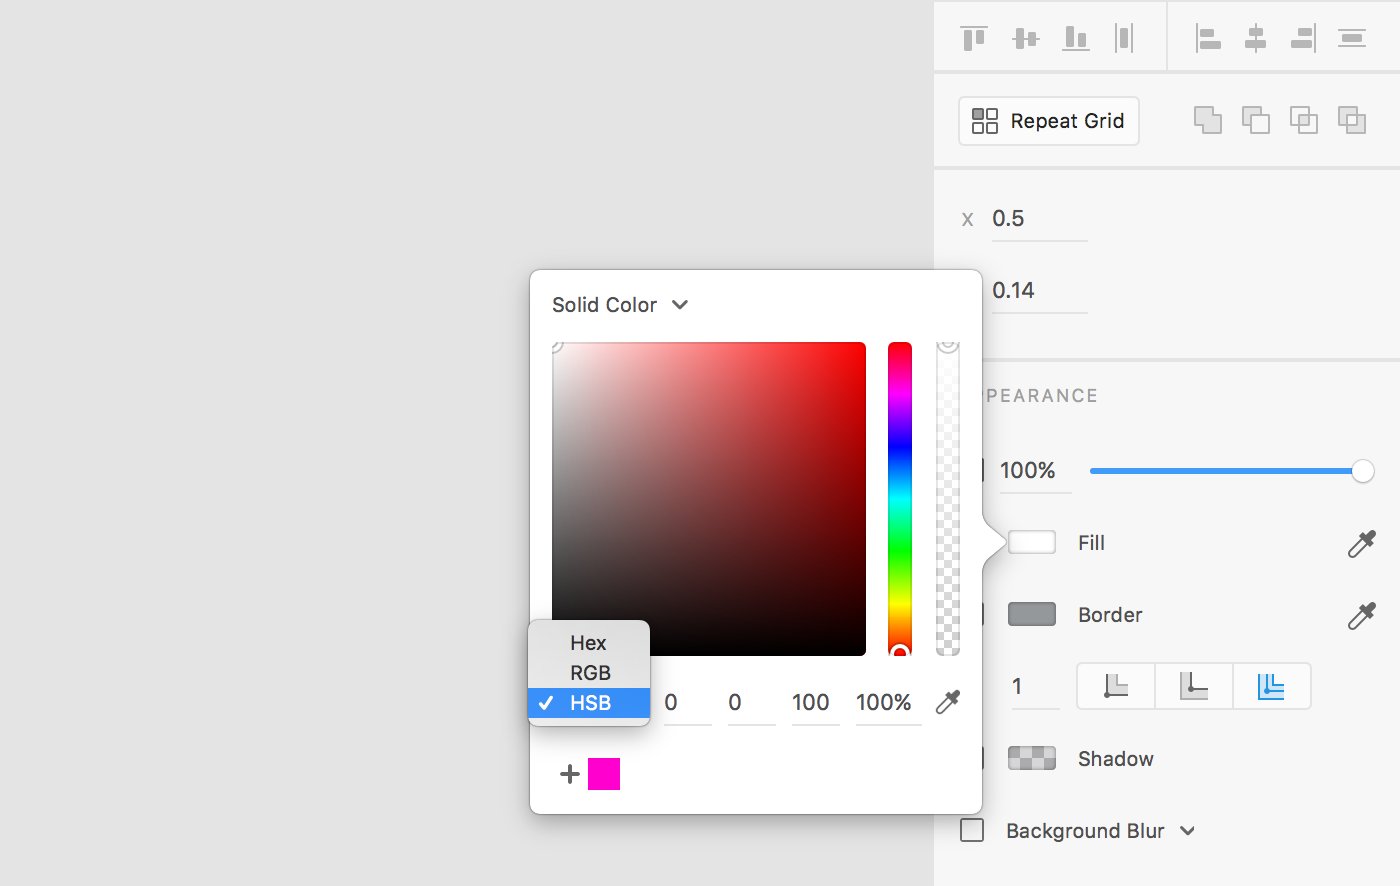 Adobe XD trên Twitter là một công cụ thiết kế tuyệt vời. Với chế độ chuyển đổi nhanh giữa các mô hình màu sắc, bạn có thể tùy chỉnh màu sắc cho thiết kế của mình một cách dễ dàng và nhanh chóng. Hãy xem hình ảnh để biết thêm chi tiết cực kỳ hữu ích này!